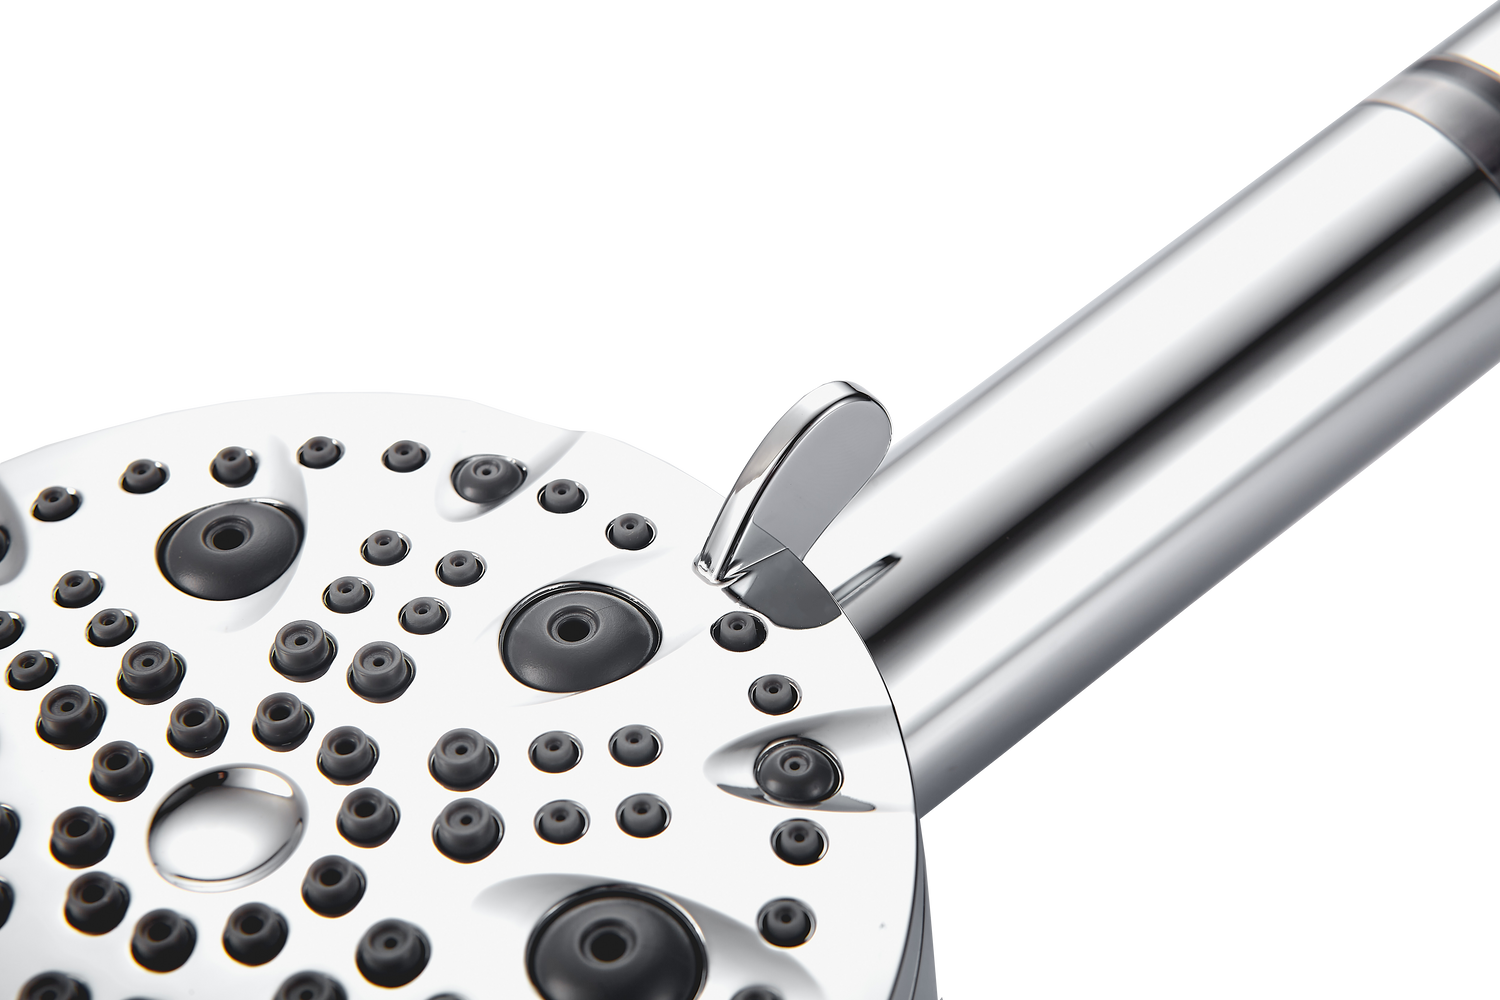 Vysokotlaká sprchová hlavice MineralStream Luxe s 9 režimy (filtrovaná)